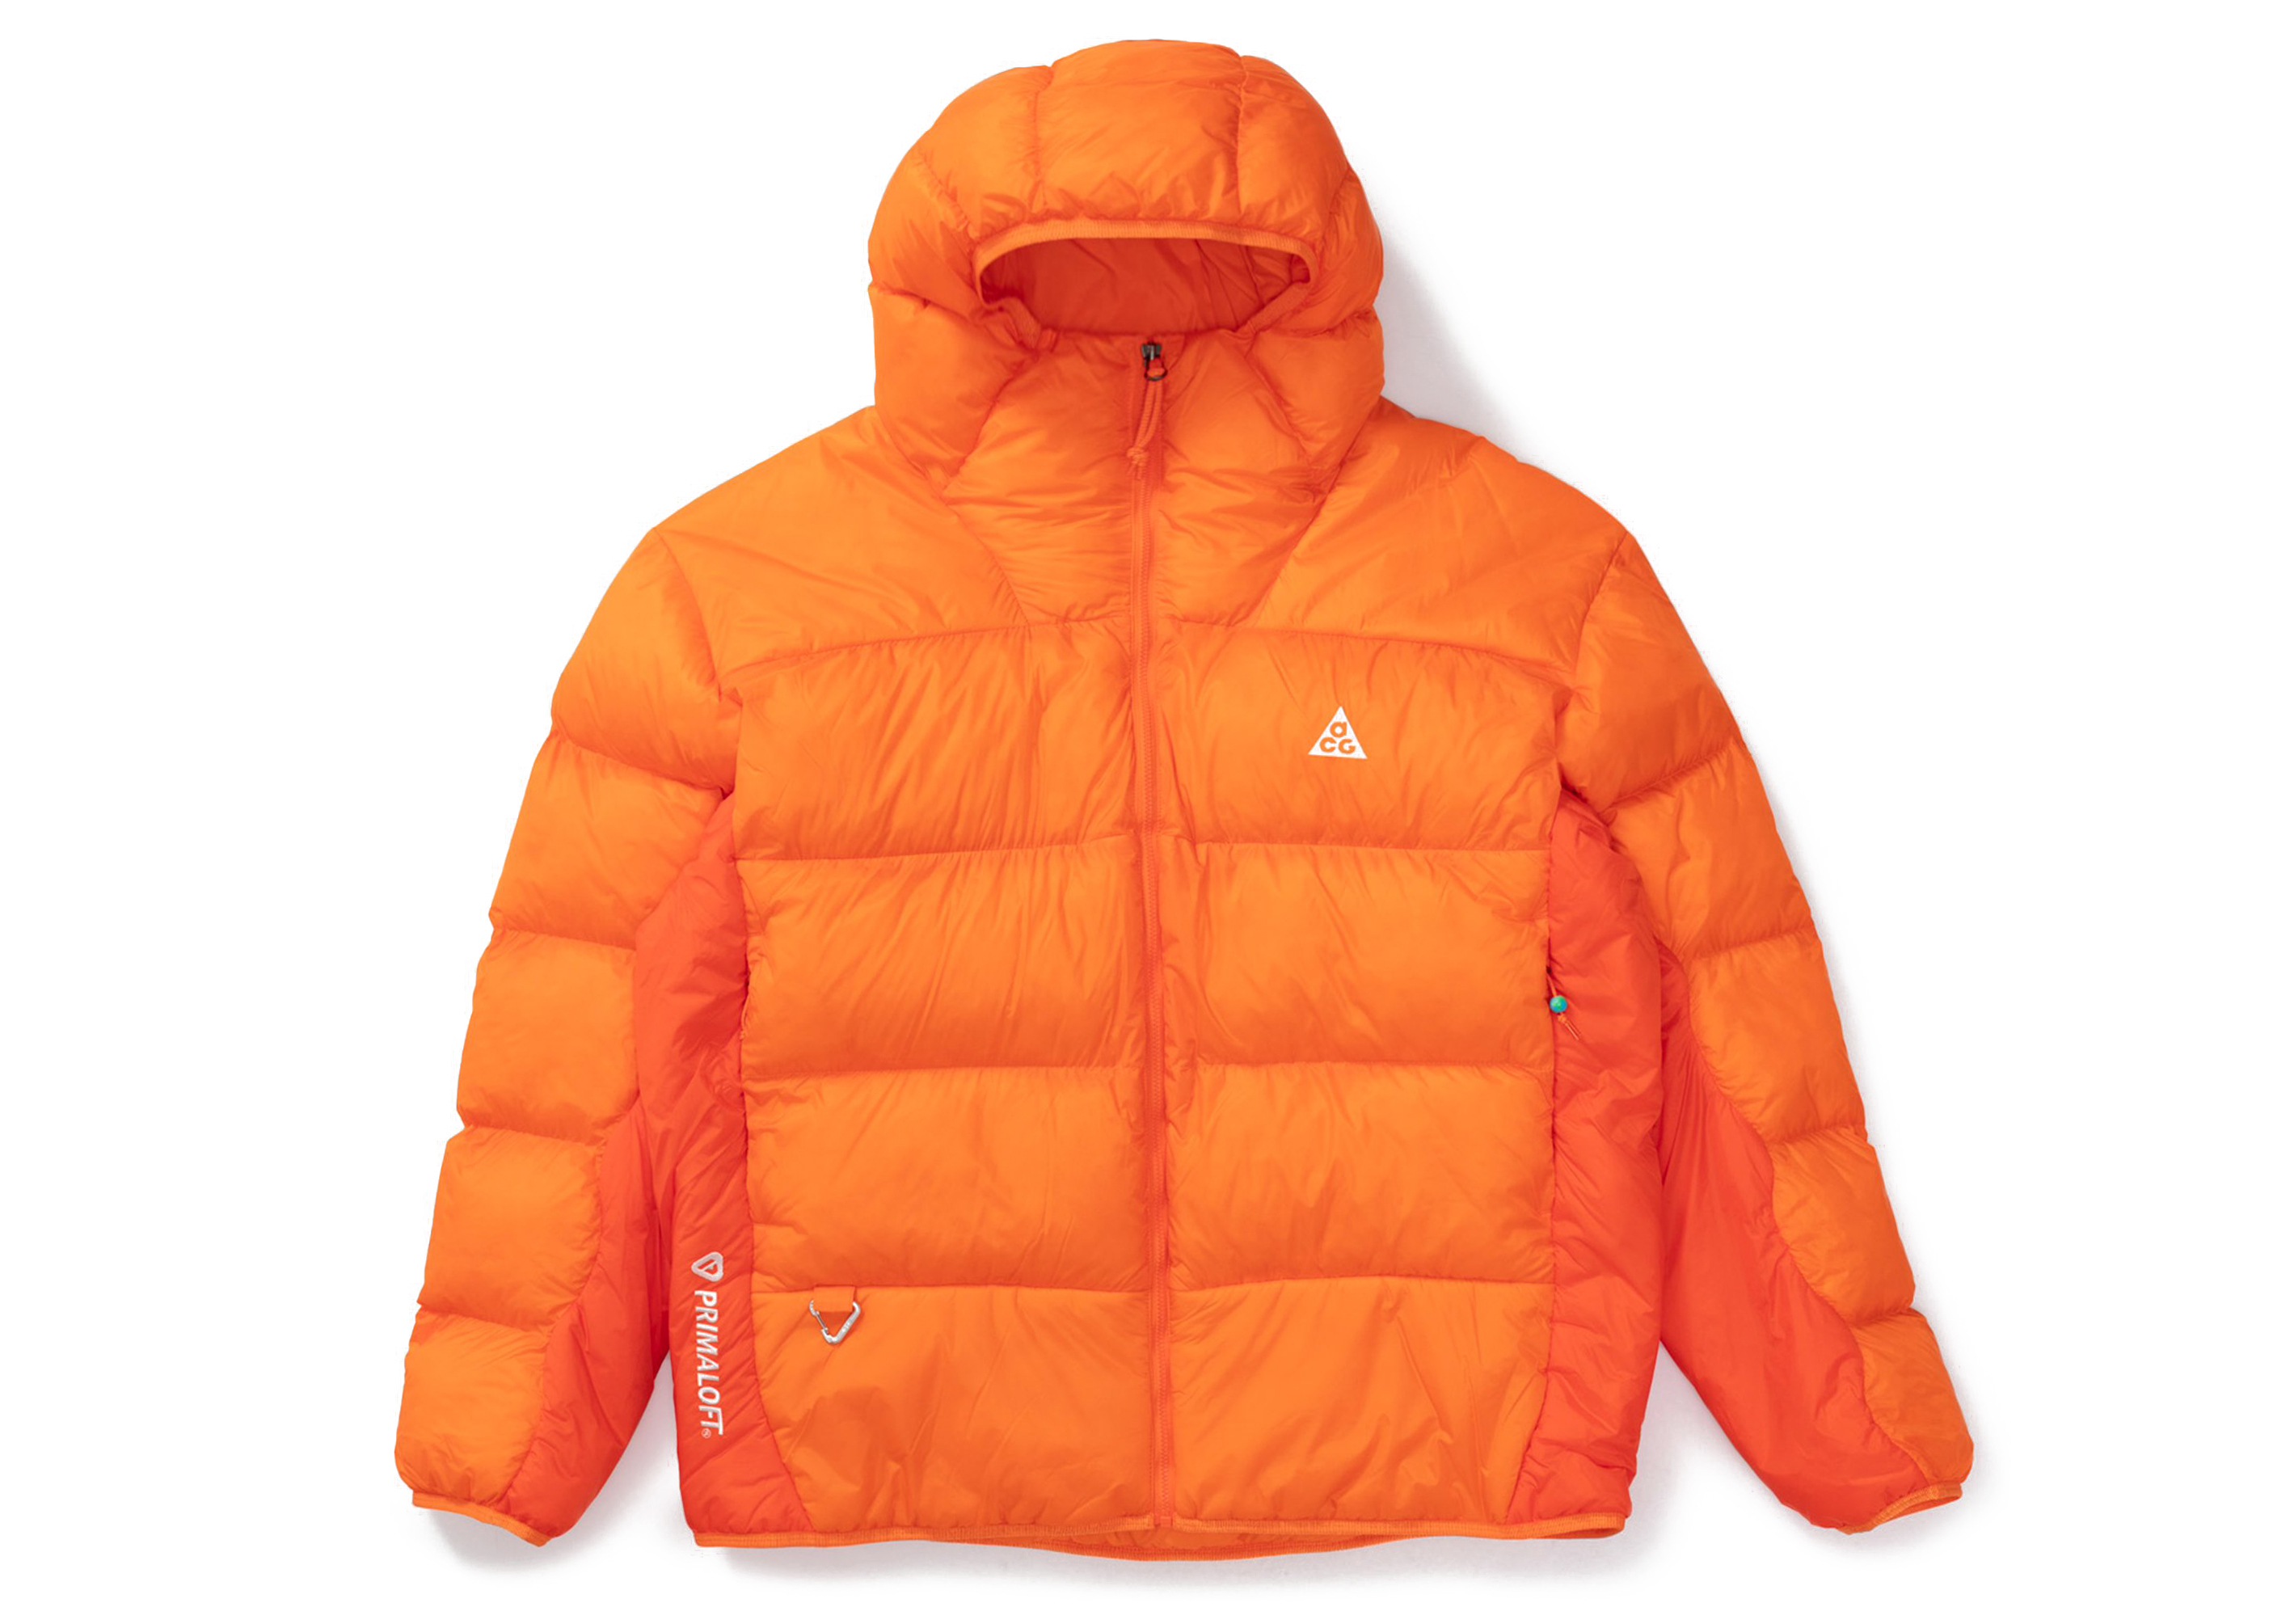 Nike ACG Therma-FIT ADV Lunar Lake Puffer Jacket Safety Orange